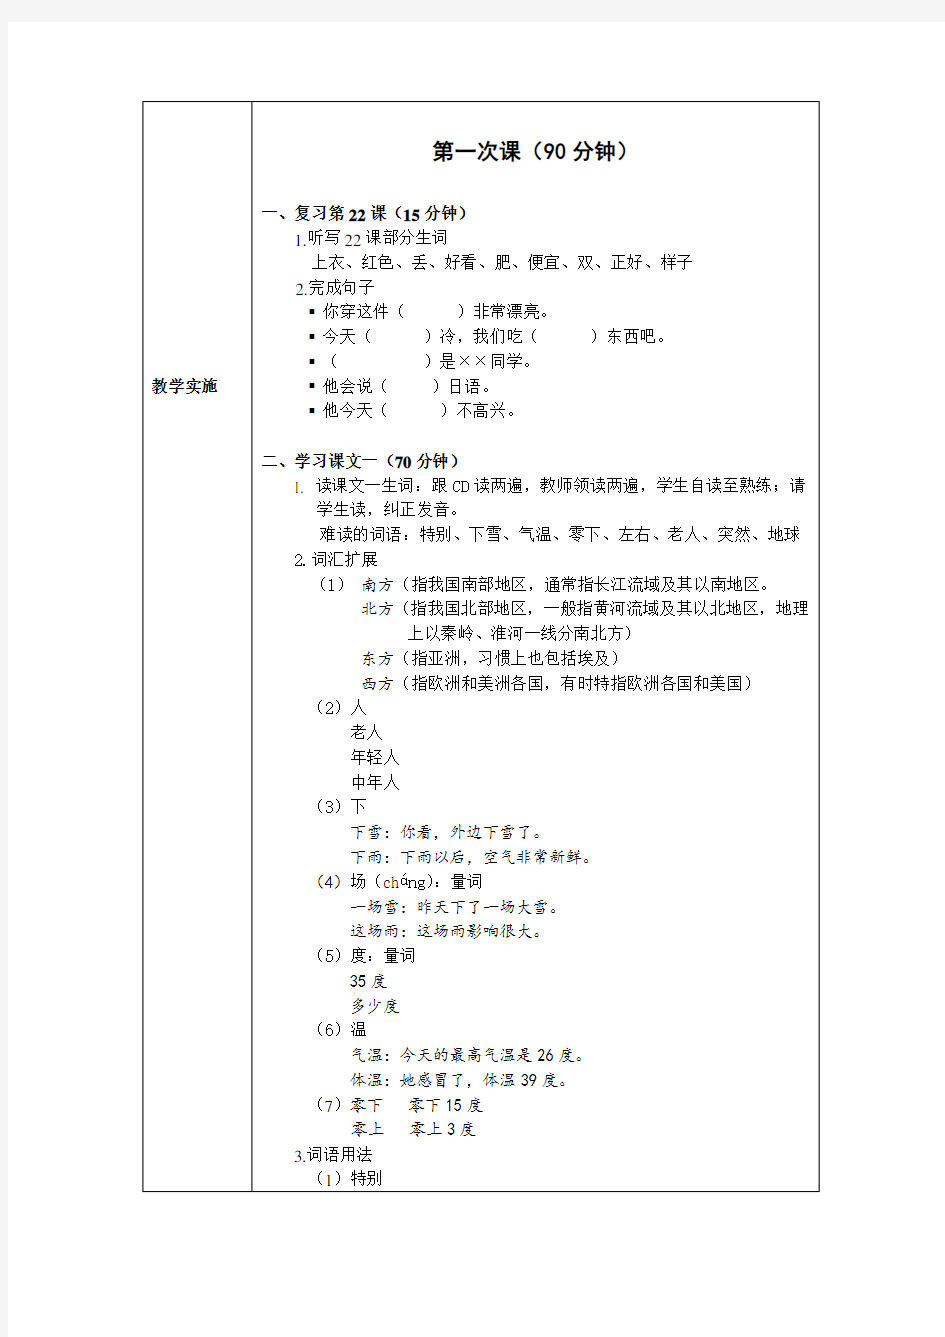 发展汉语初级综合1第23课教案